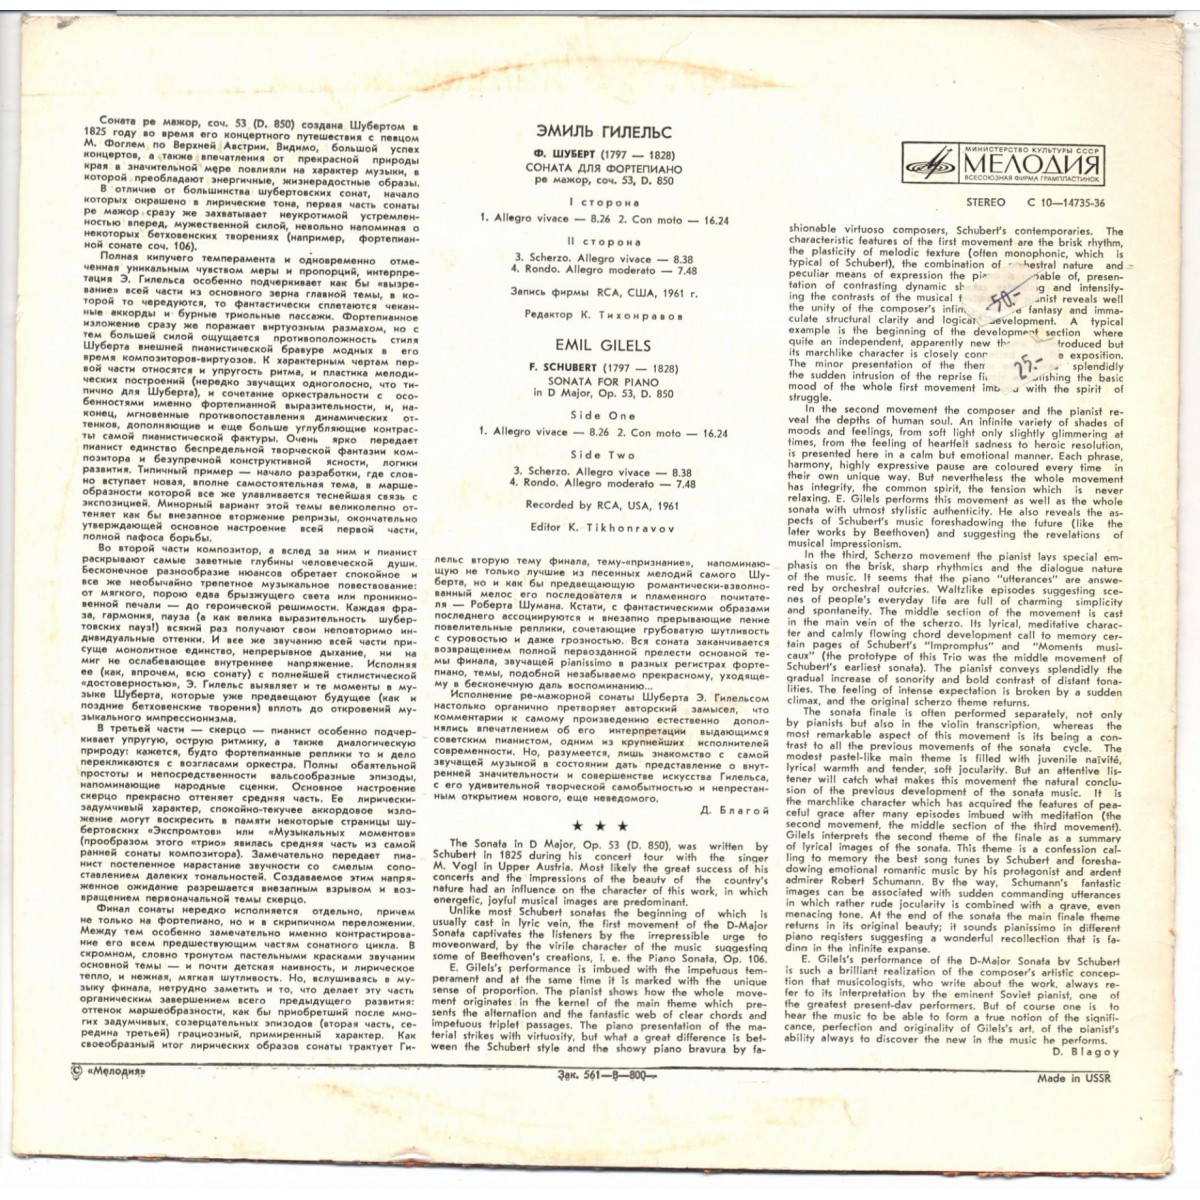 Ф. ШУБЕРТ (1797–1828): Соната для ф-но ре мажор, соч. 53, D. 850 (Э. Гилельс)